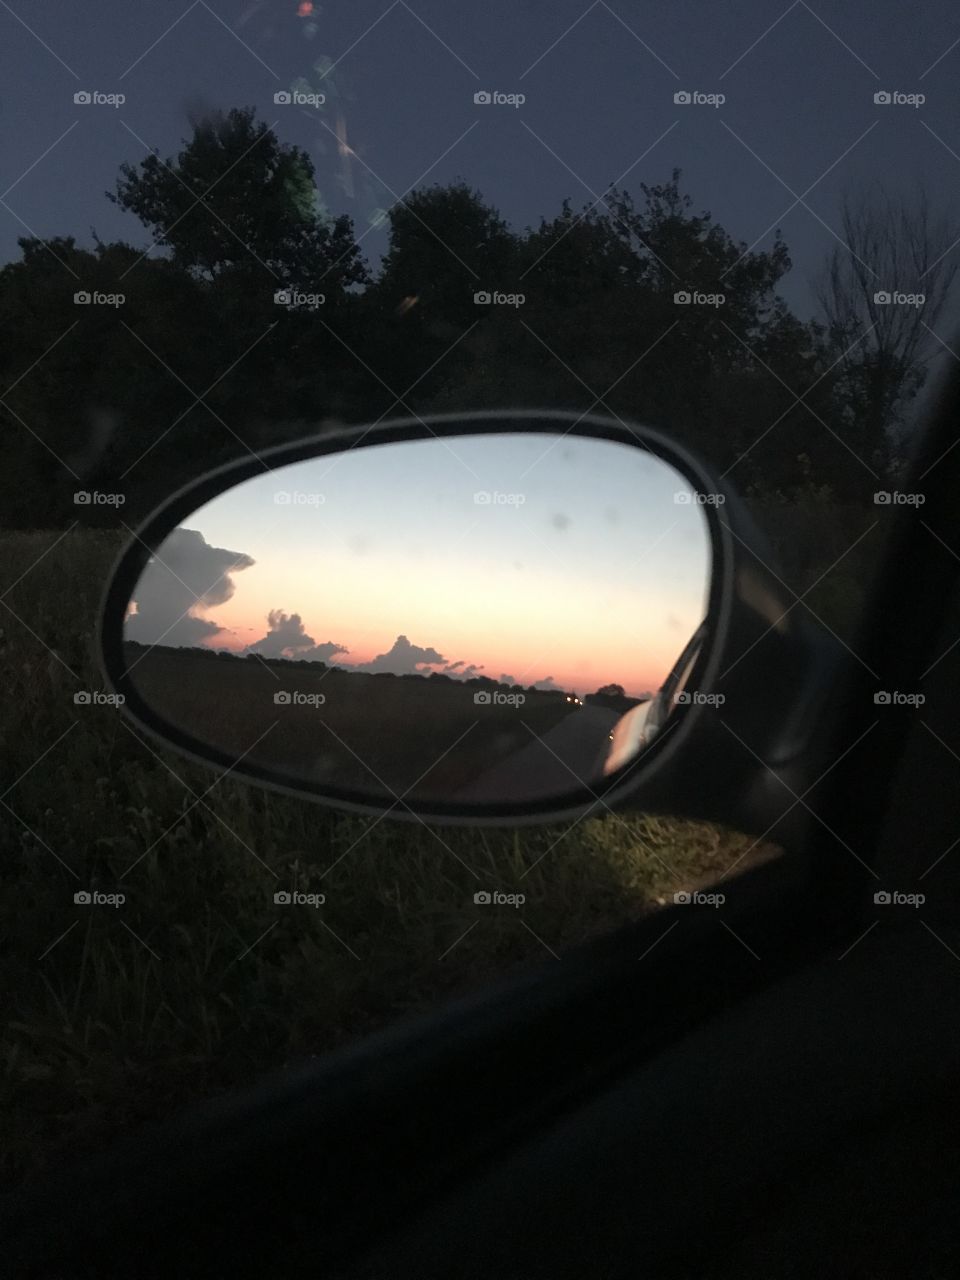 Rear view 
Sunset 
Car
Sun
1